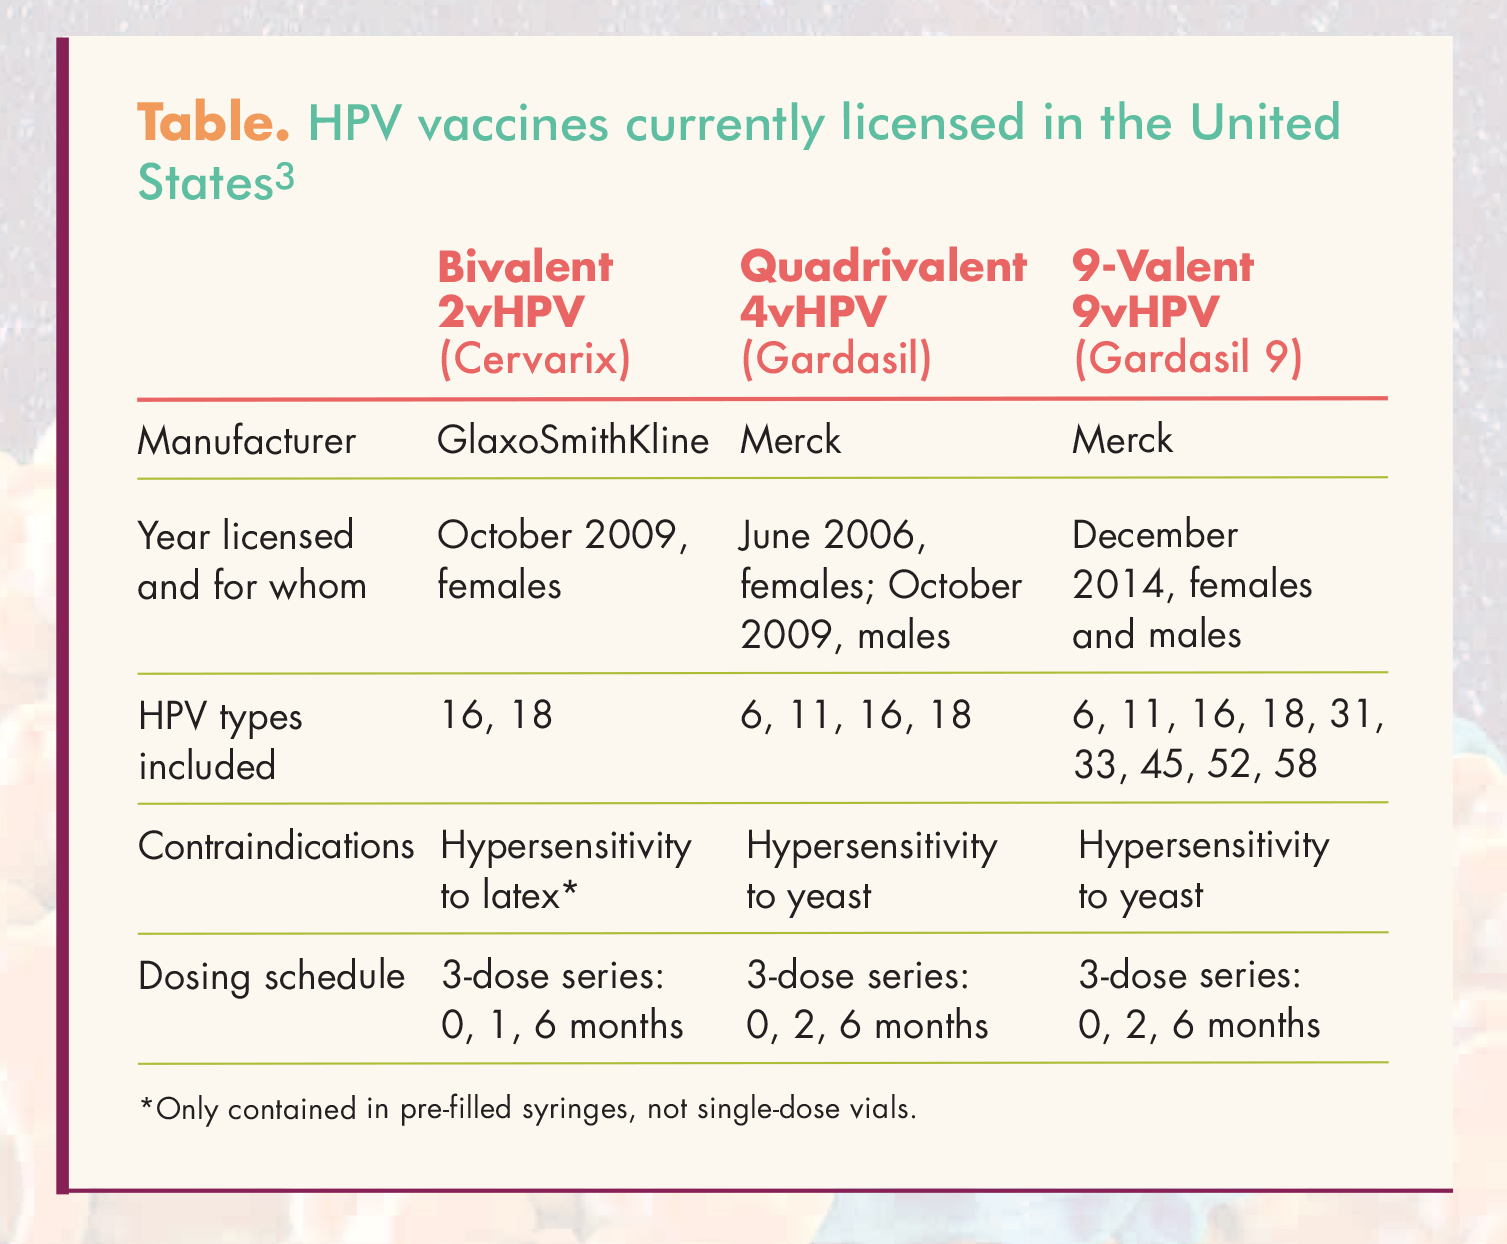 Hpv gardasil vaccine schedule. Hpv gardasil vaccine schedule